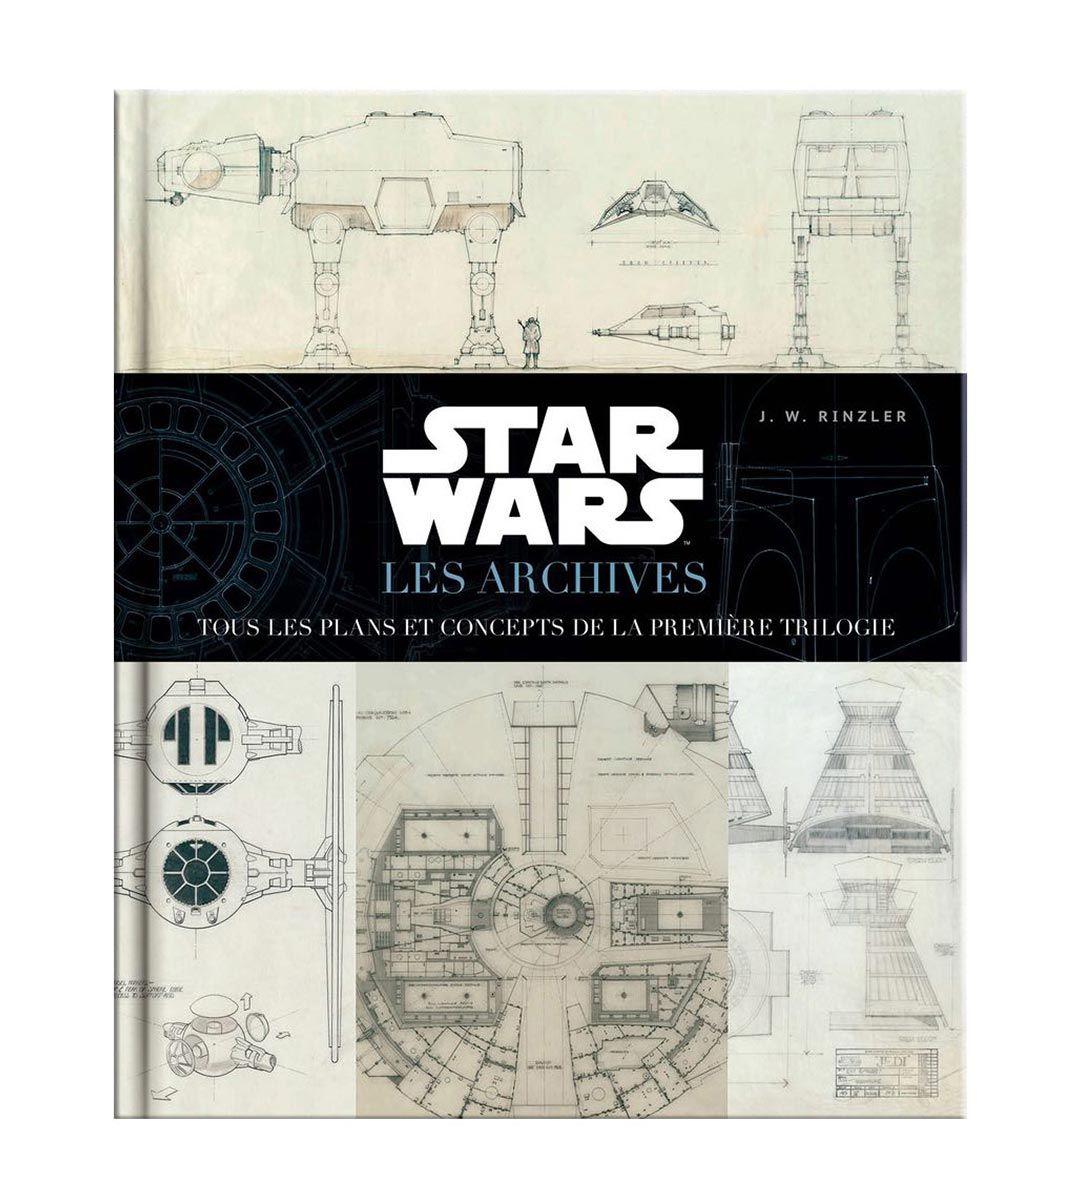 Star Wars: Archivos, todos los planes y conceptos de la primera trilogía